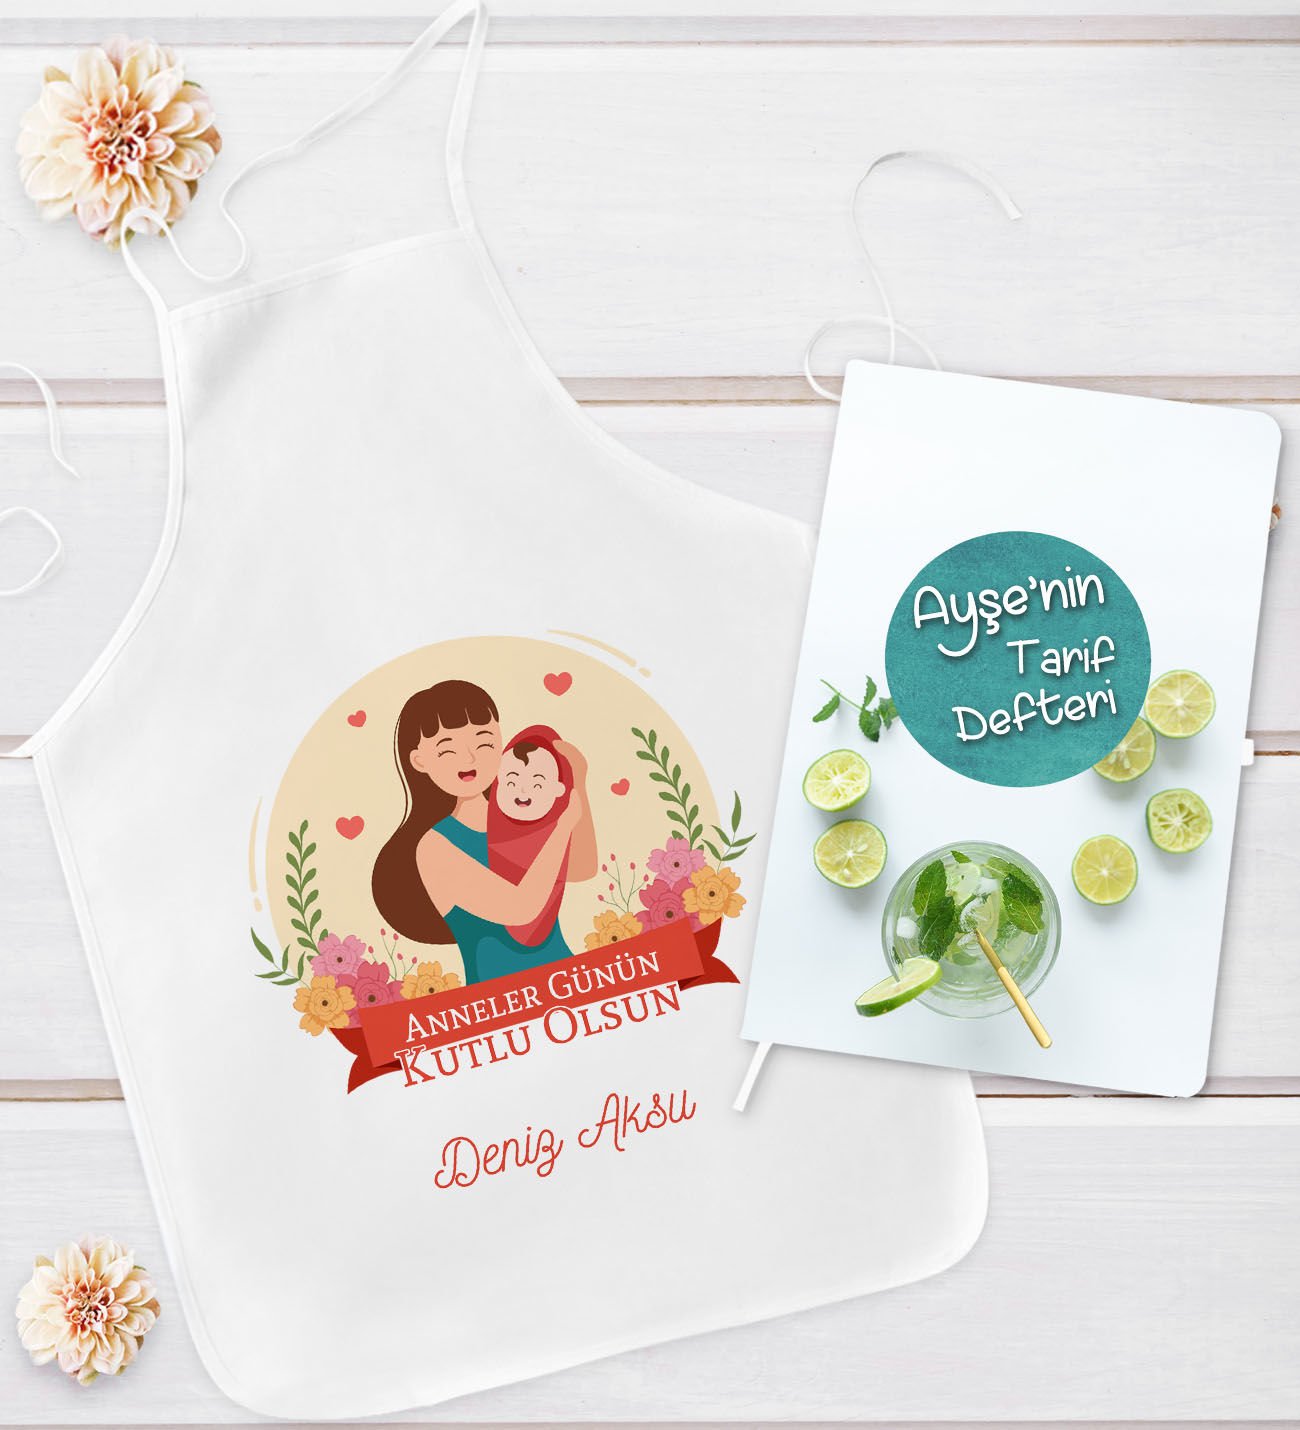 BK Gift Kişiye Özel Anneler Günü Tasarımlı Mutfak Önlüğü ve Yemek Tarif Defteri Hediye Seti-1, Anneye Hediye, Anneler Günü Hediyeleri